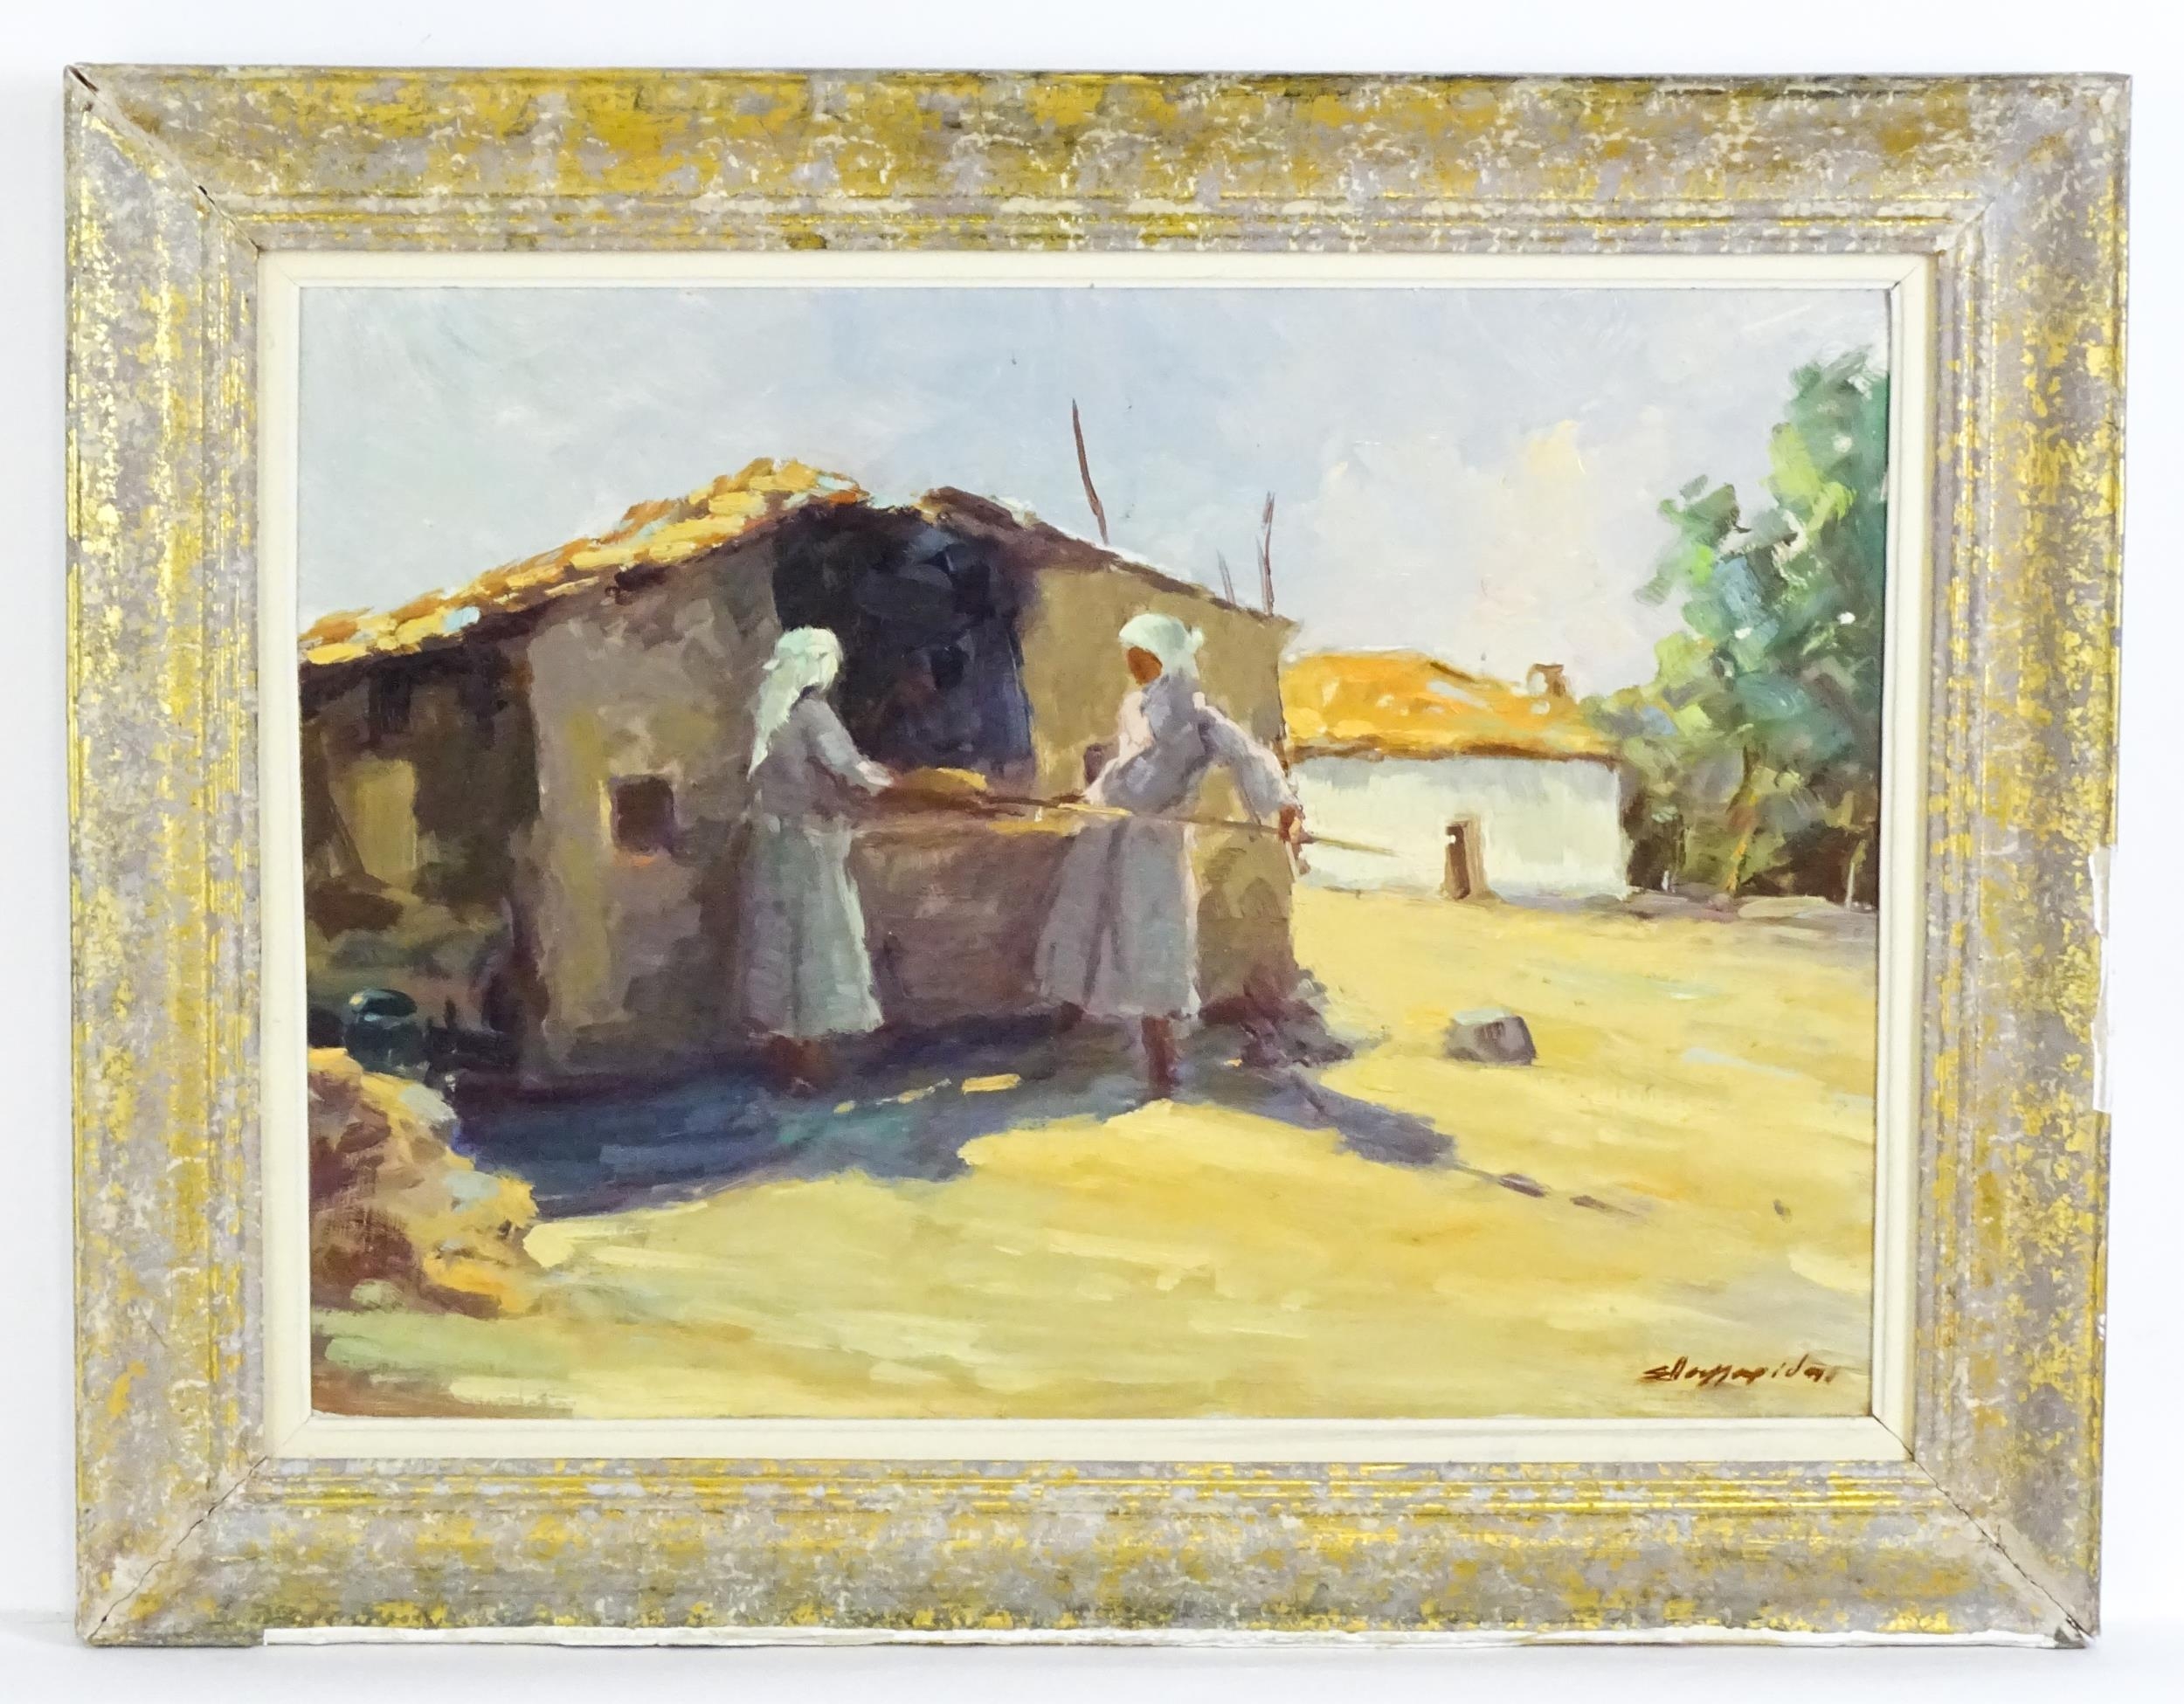 20th century, Oil on board, An Eastern European street scene with two women baking bread. Possibly